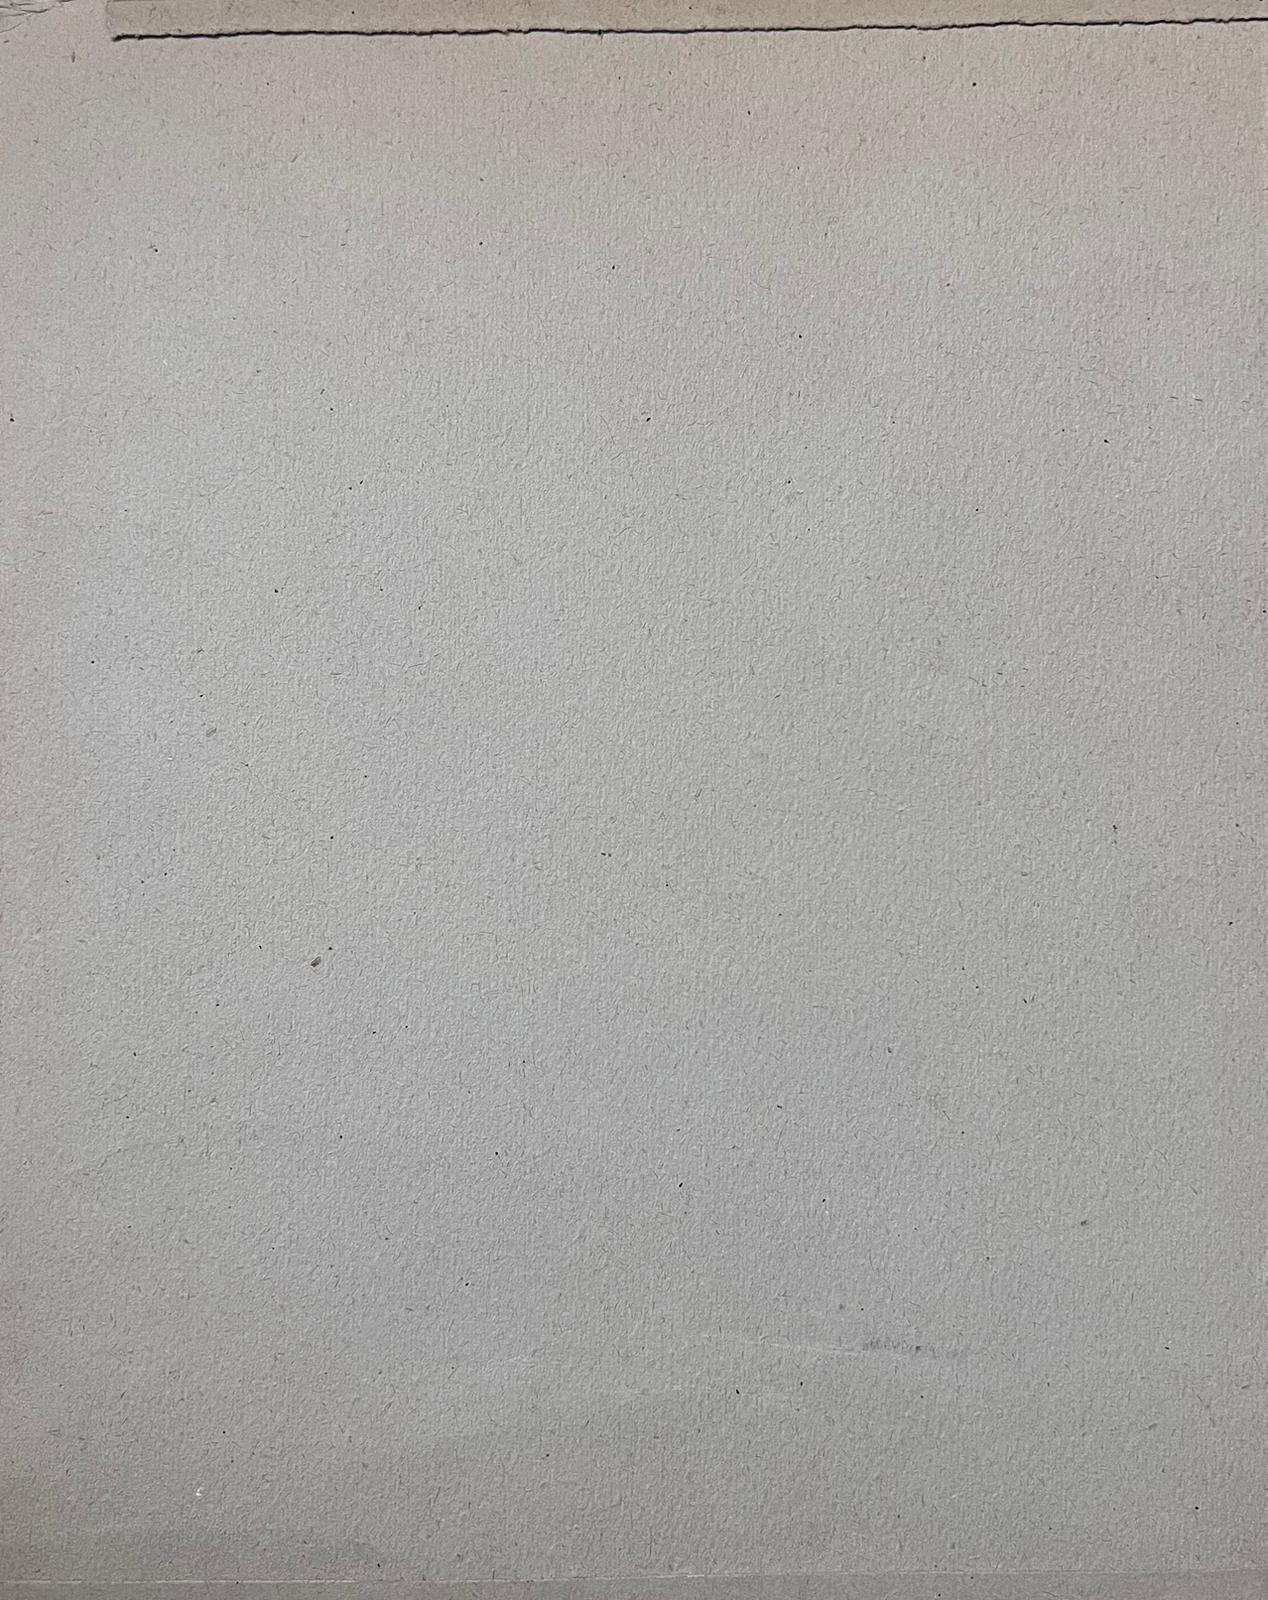 Jean La Forgue (français 1901-1975) gouache sur papier, non encadré
peinture : 14.5 x 11 pouces
provenance : succession de l'artiste, France
état : très bon état ; il y a des marques et des taches mineures liées à l'âge sur la surface, simplement